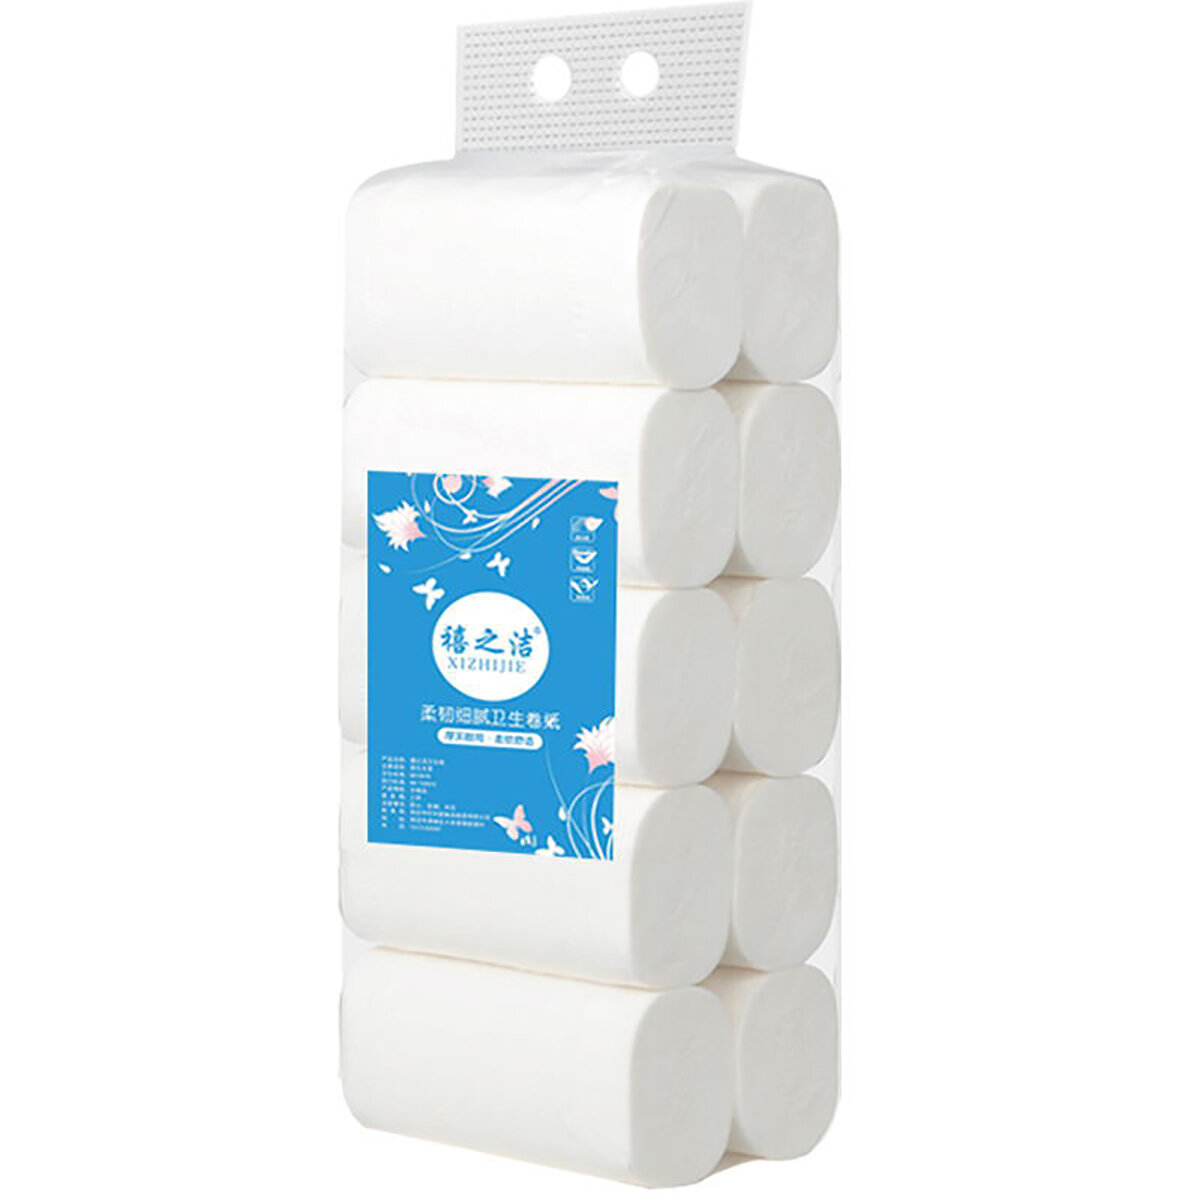 10 Rollen 4-lagig Soft Native Wood Pulp Toilettenpapier Tissue Household Travel Starke Wasseraufnahme Schnell auflösende Toilettenpapierbox